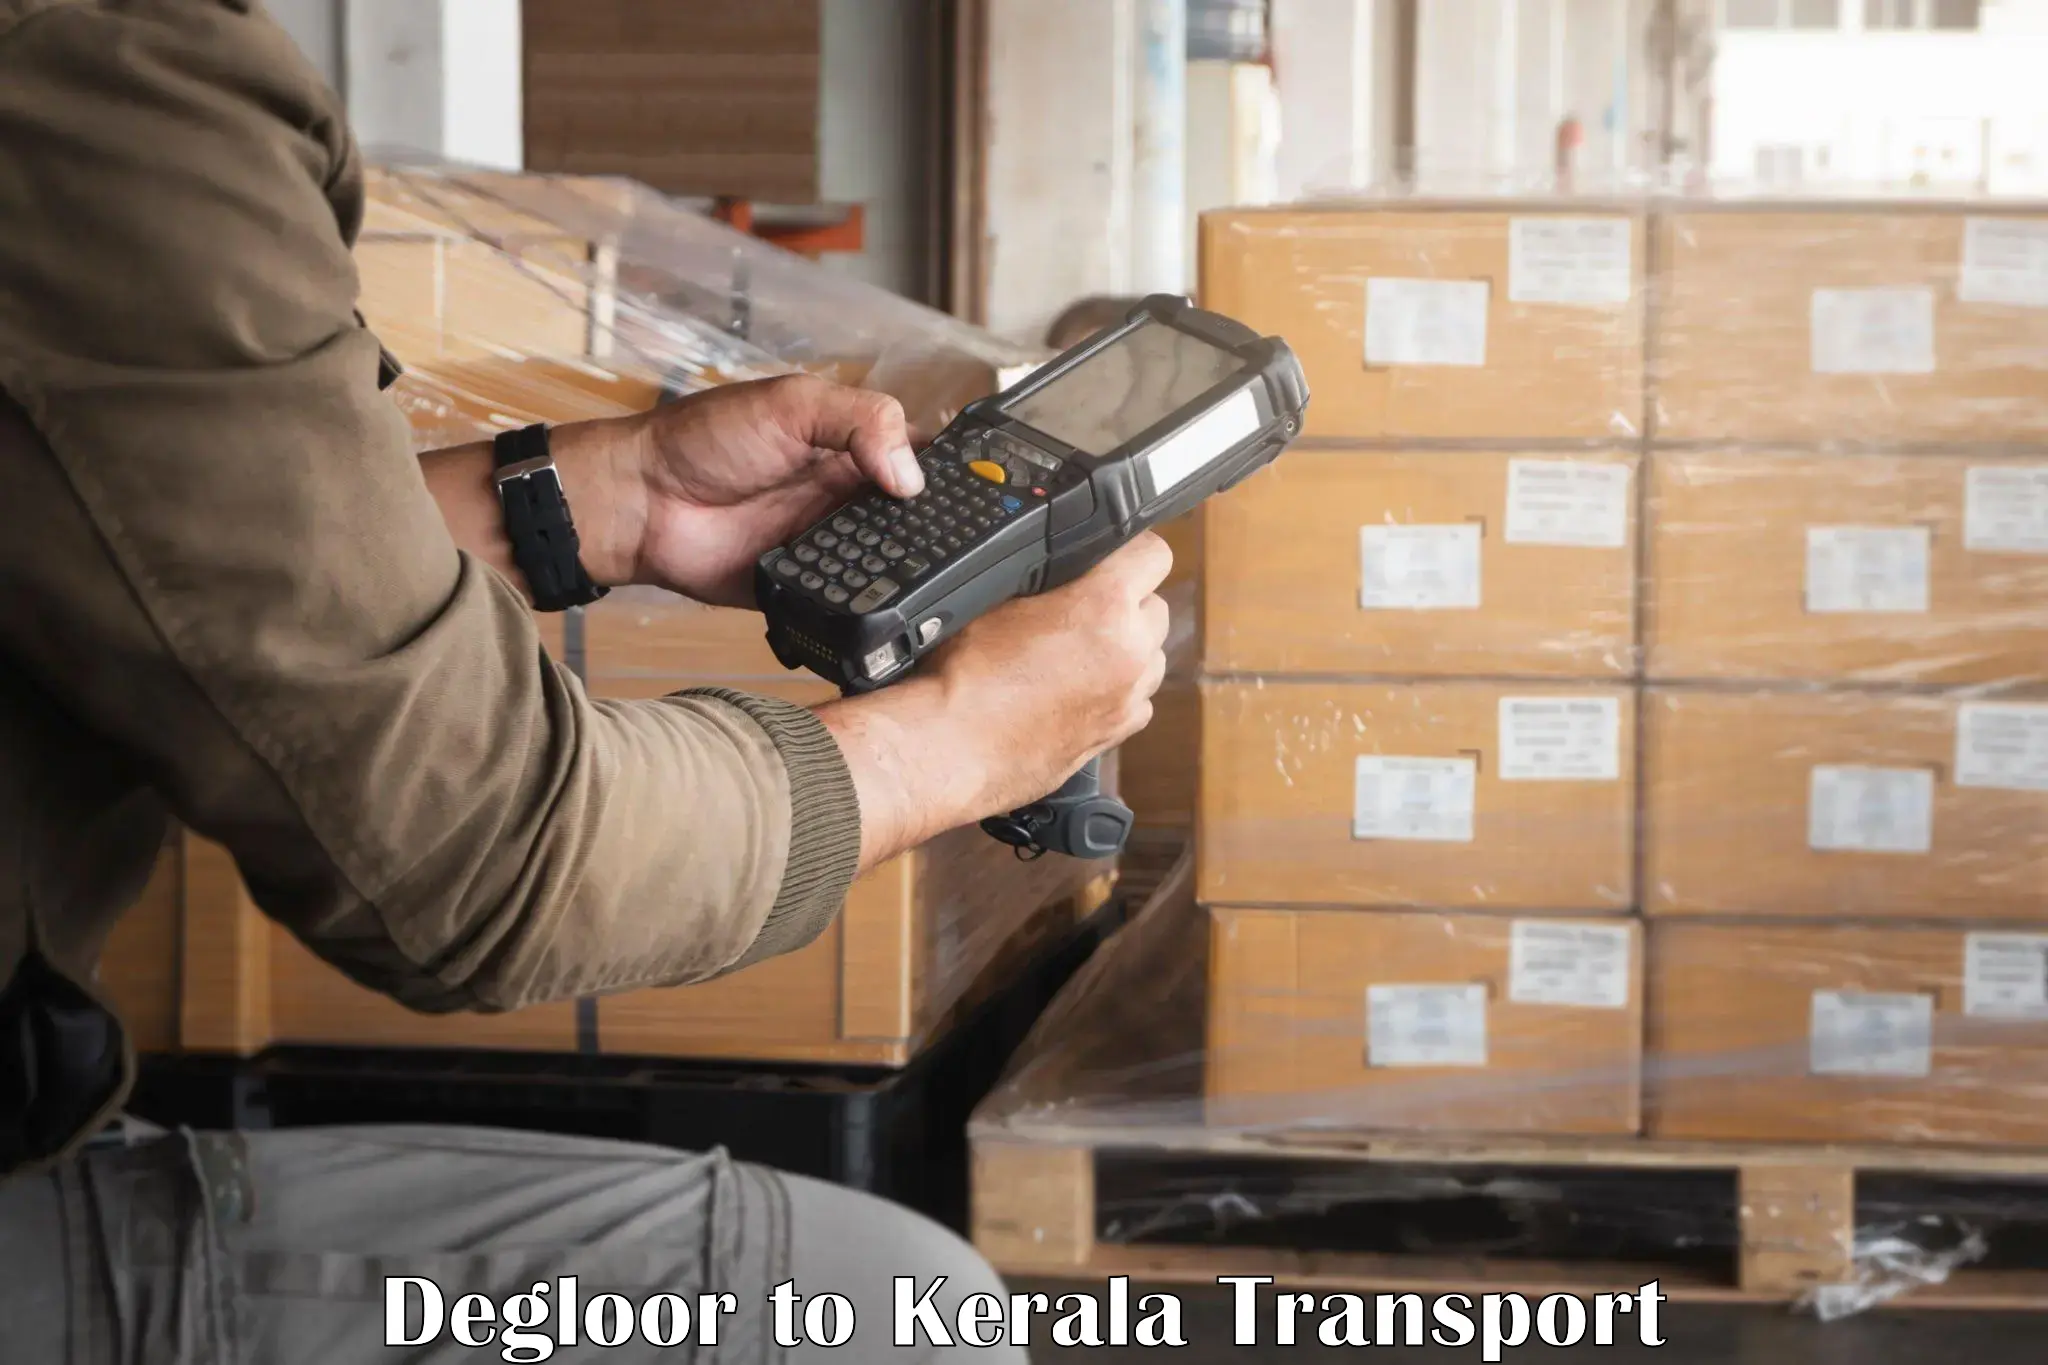 Container transport service Degloor to Ponekkara